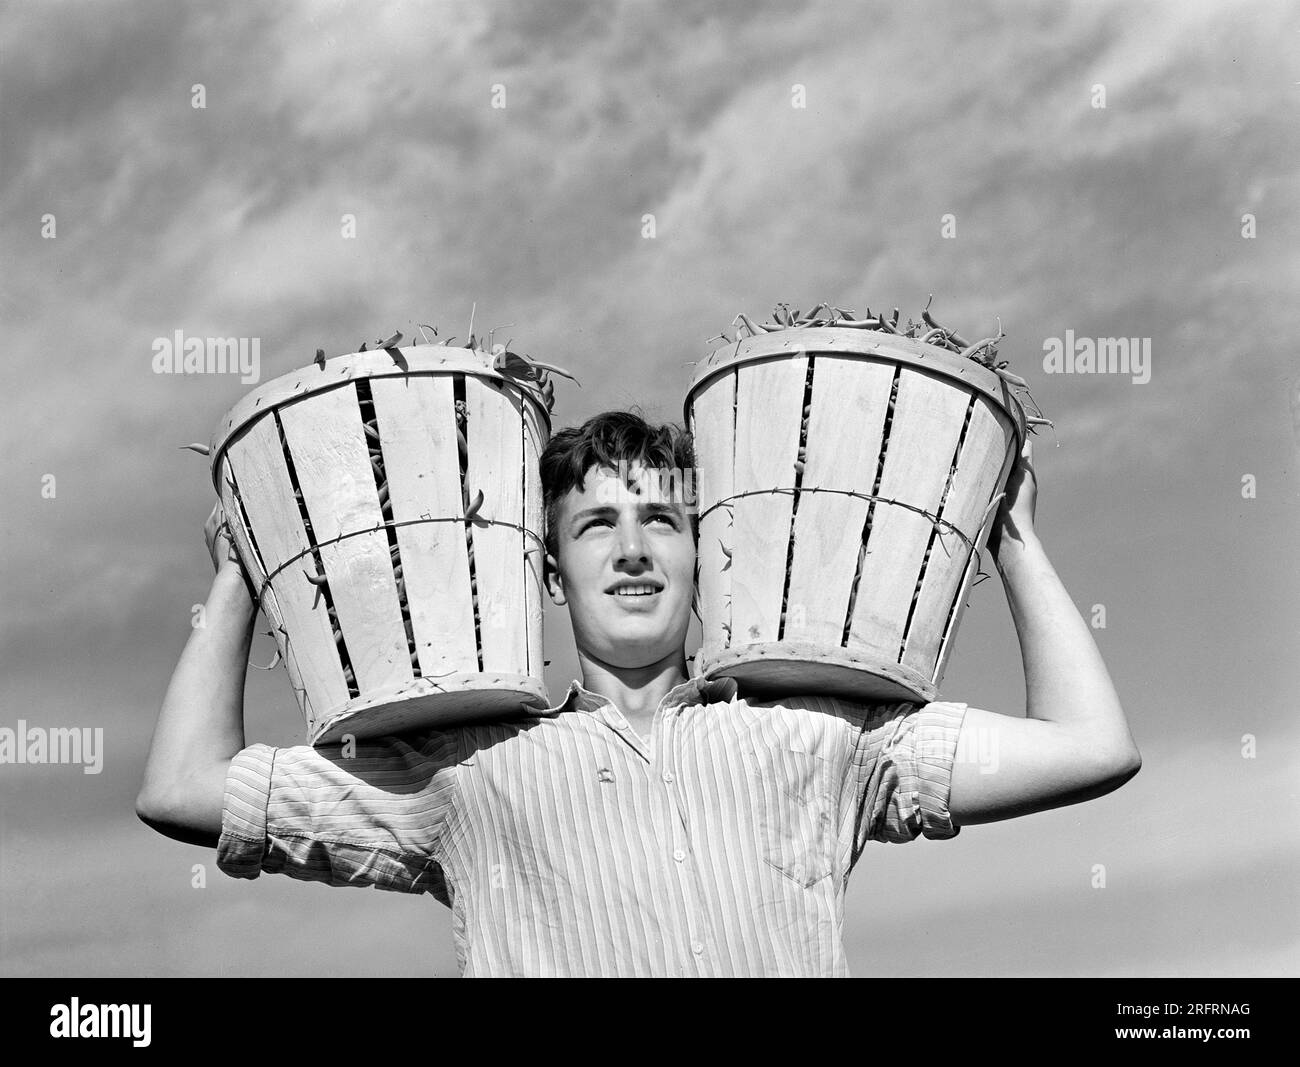 Travailleur sur le terrain avec deux paniers de haricots, Seabrook Farms, Bridgeton, New Jersey, États-Unis, Arthur Rothstein, États-Unis Farm Security Administration, juin 1942 Banque D'Images